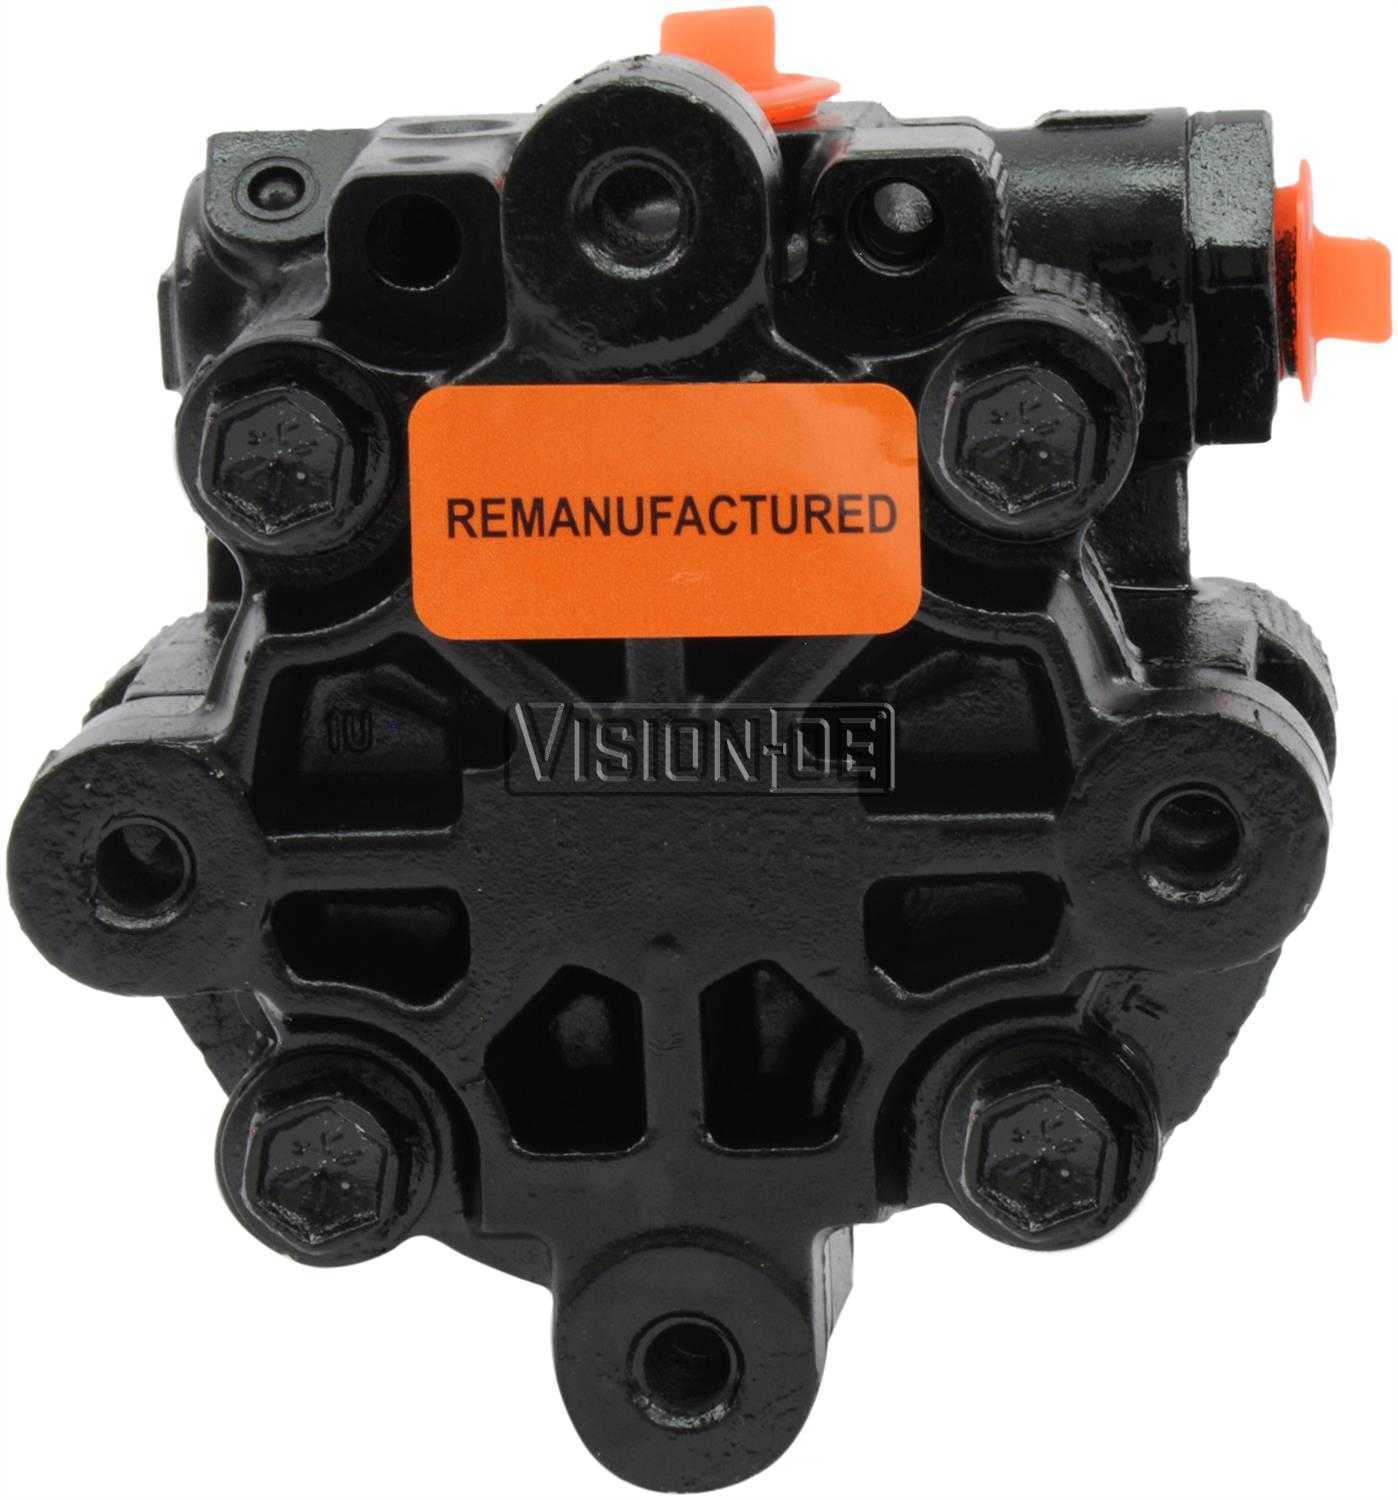 VISION-OE - Reman Power Steering Pump - VOE 720-0129